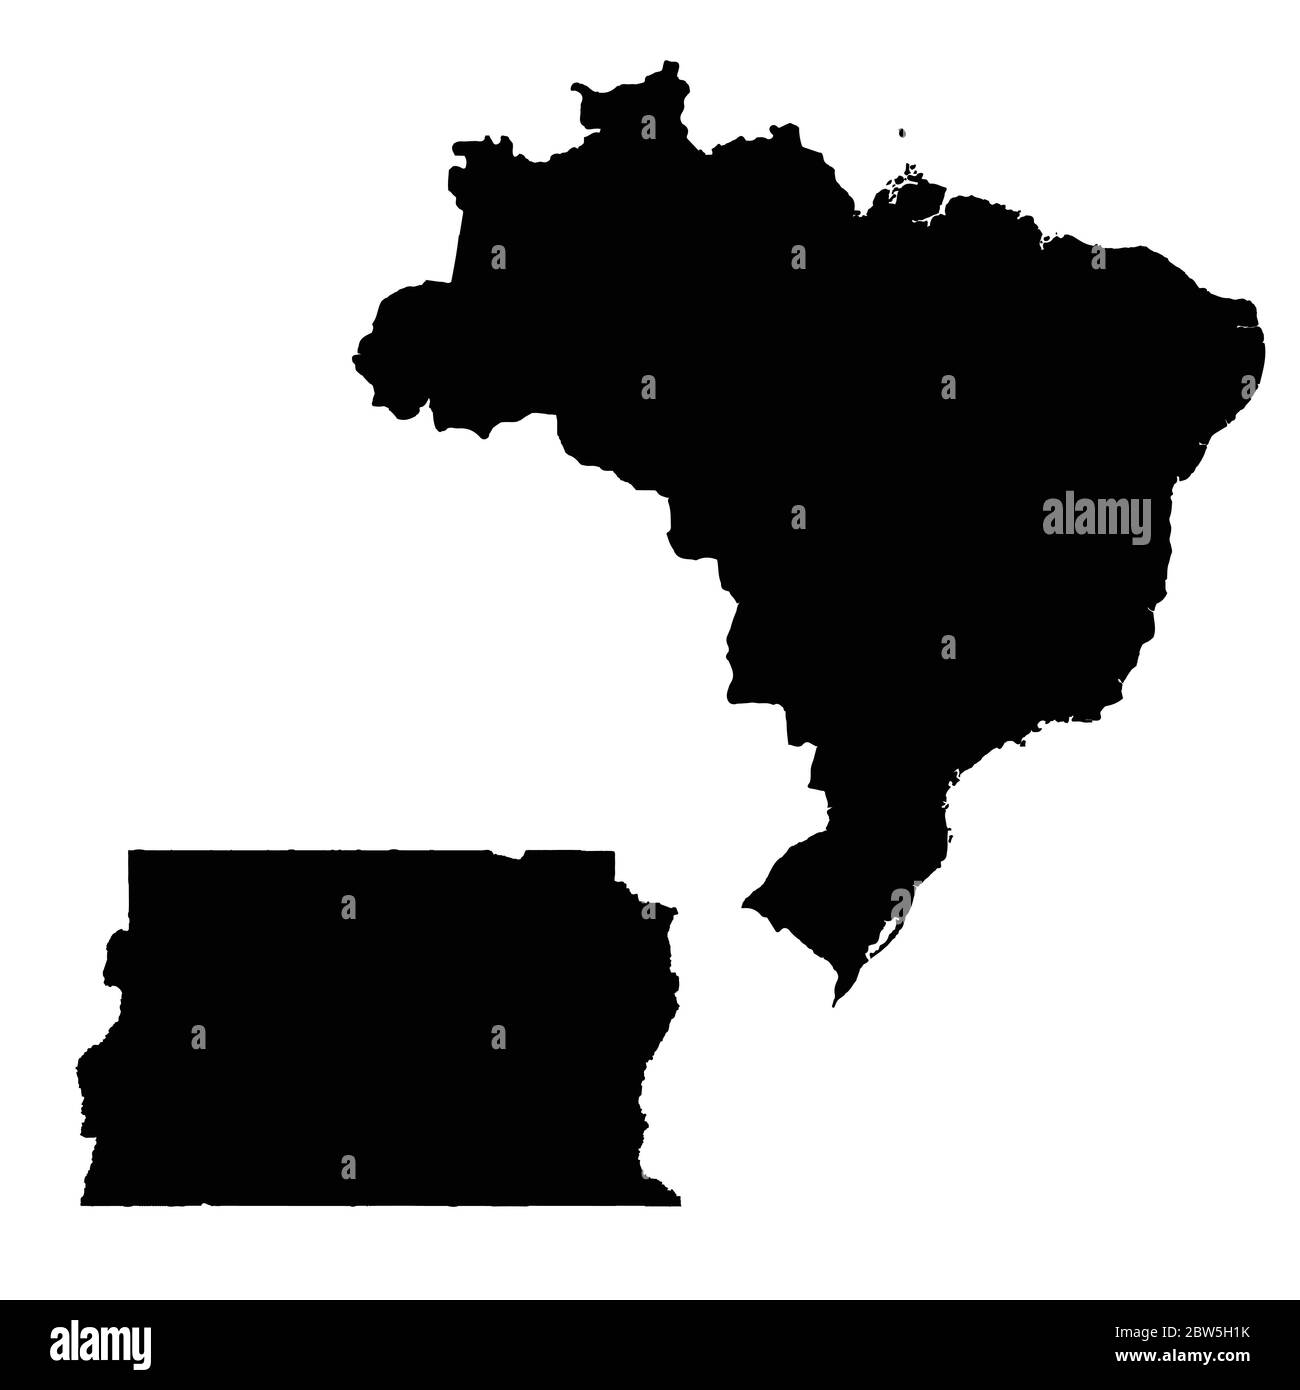 Mappa vettoriale Brasile e Brasilia. Paese e capitale. Illustrazione vettoriale isolata. Nero su sfondo bianco. Illustrazione EPS 10. Illustrazione Vettoriale